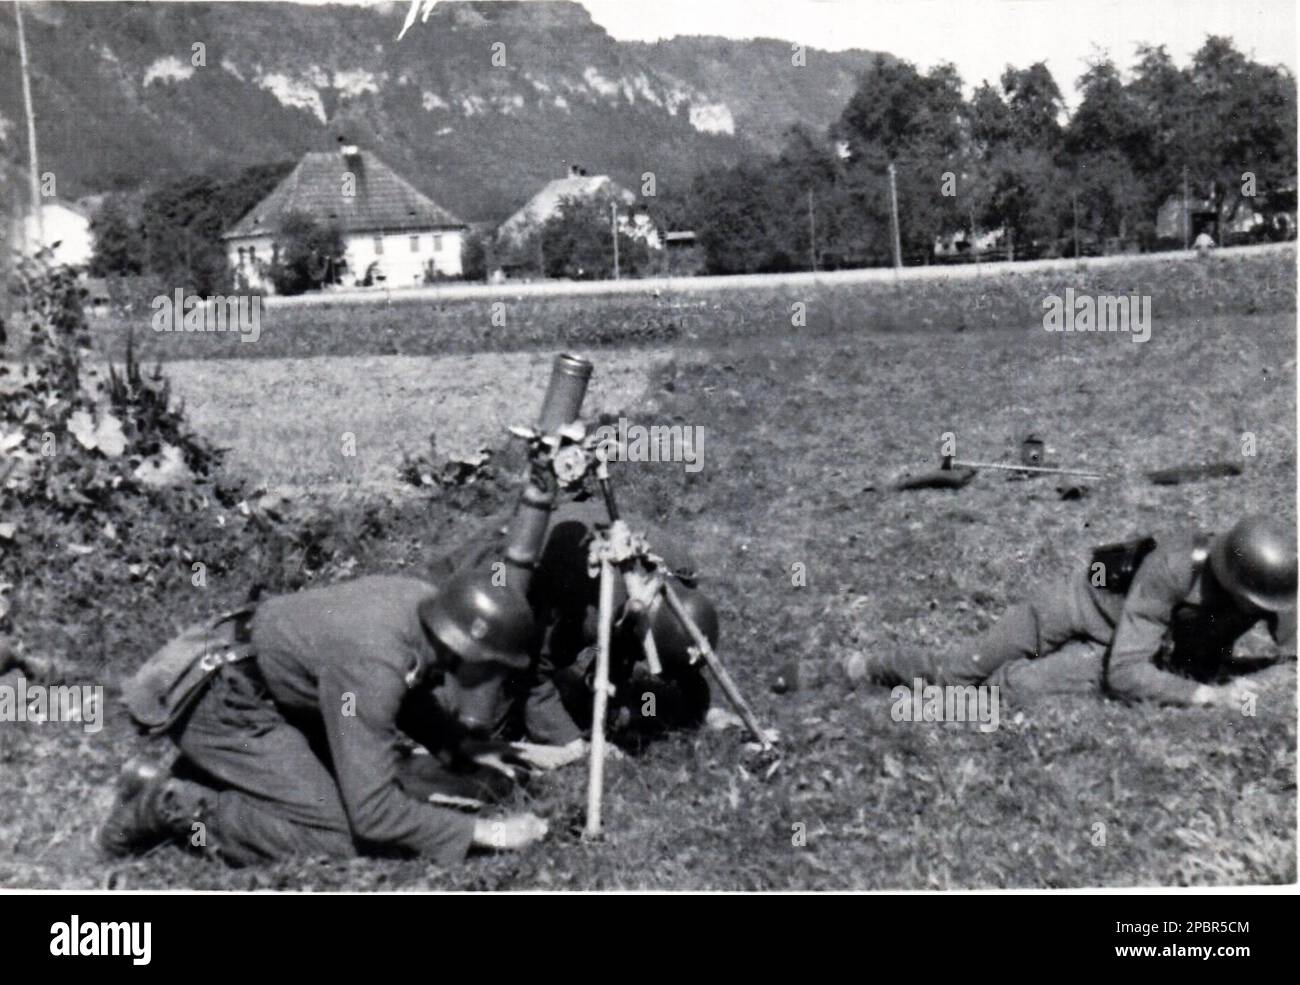 Photo allemande B&W de la Seconde Guerre mondiale cette photo provient d'une école SS Junker , (formation de leadership Academy) tir de mortier en Allemagne Banque D'Images